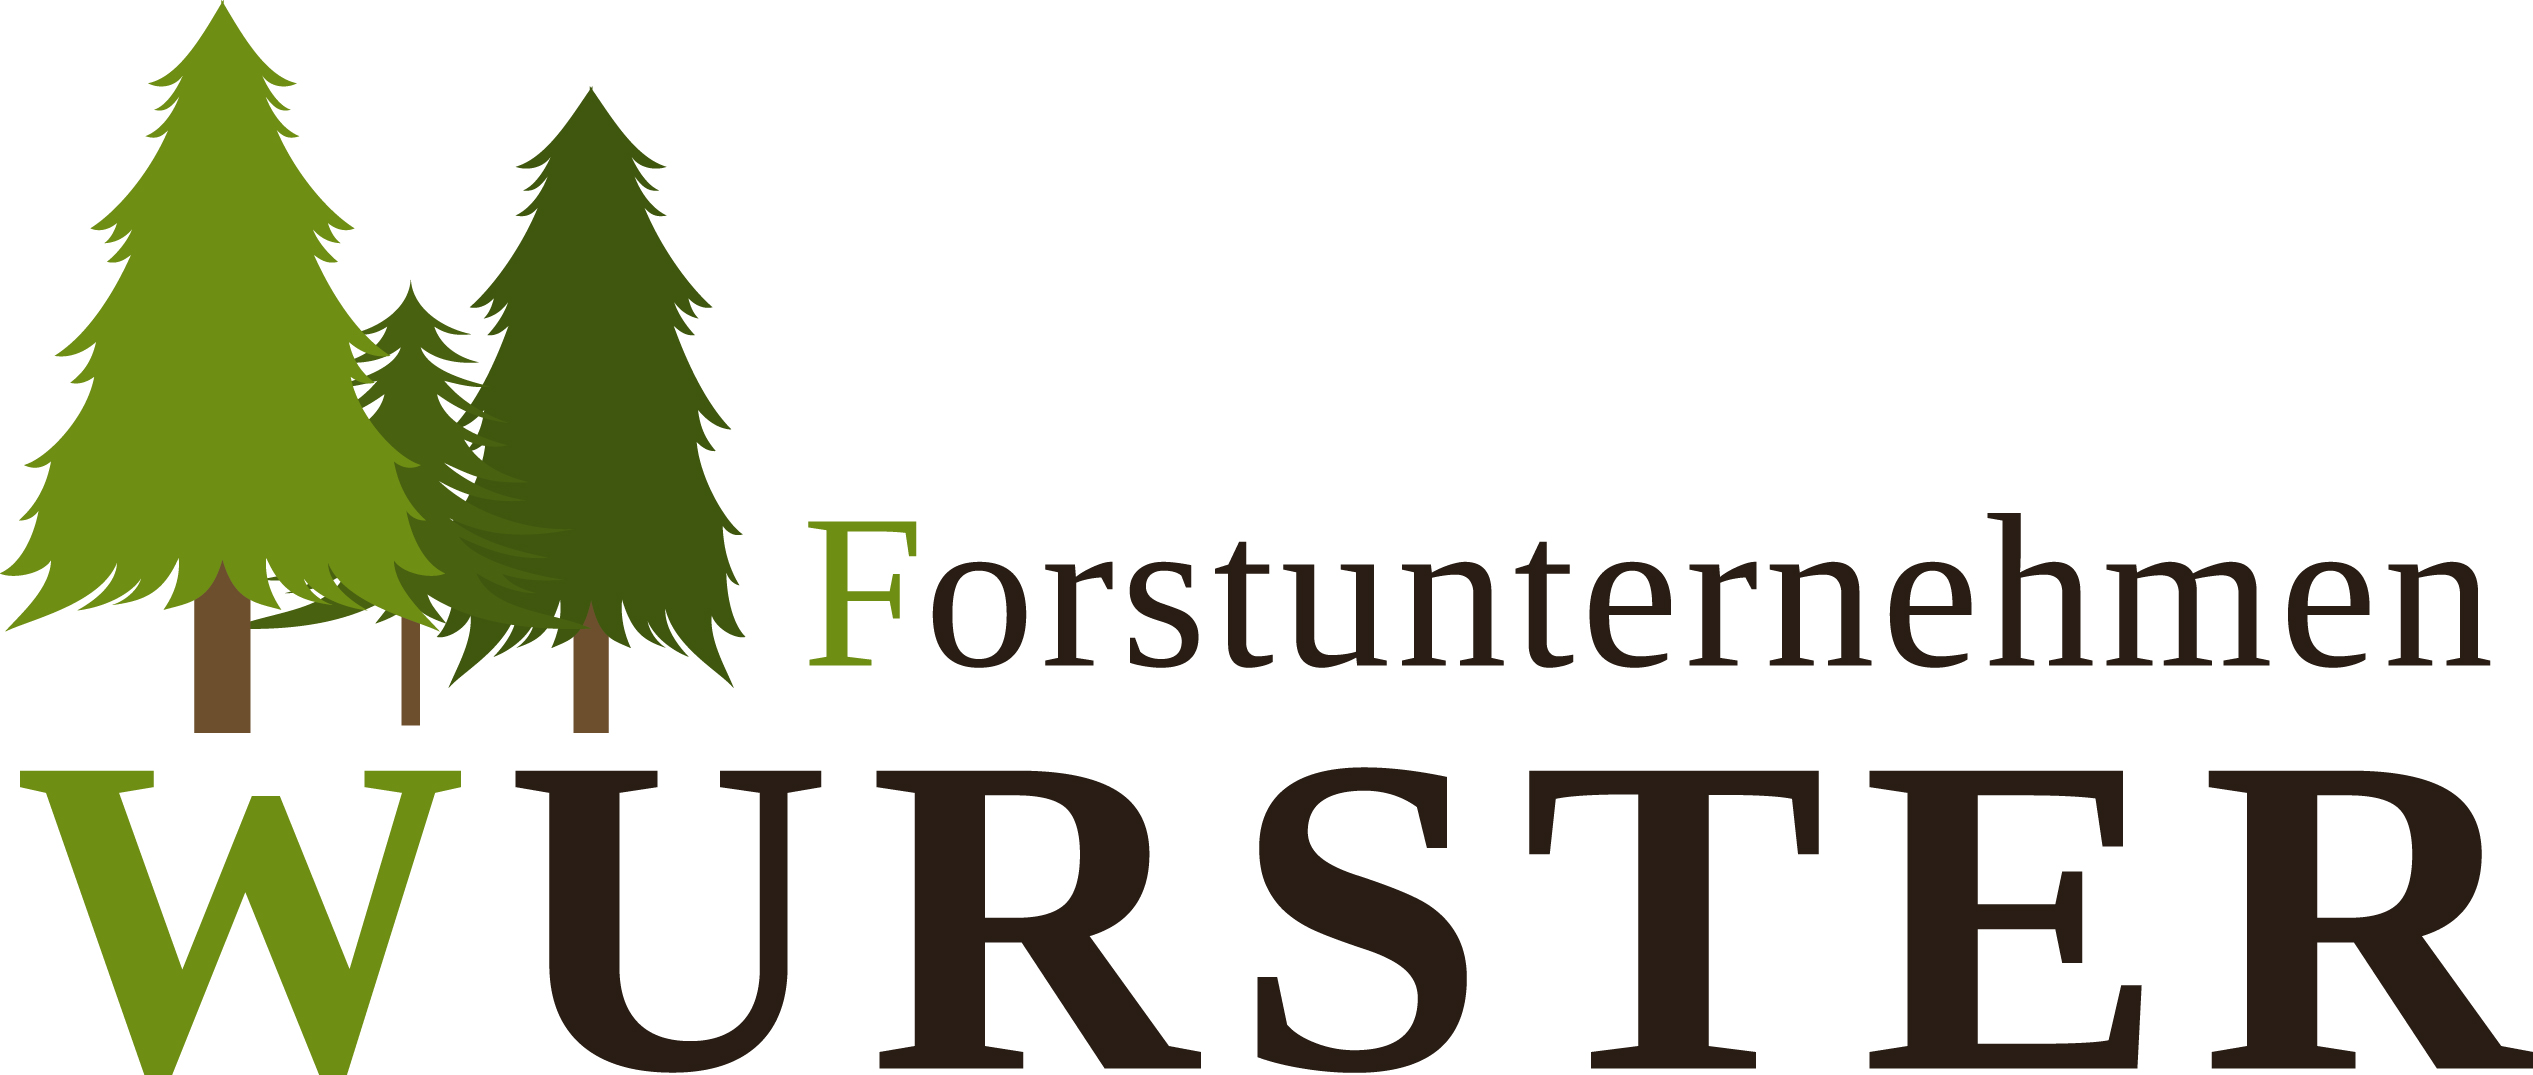 Forstunternehmen Wurster